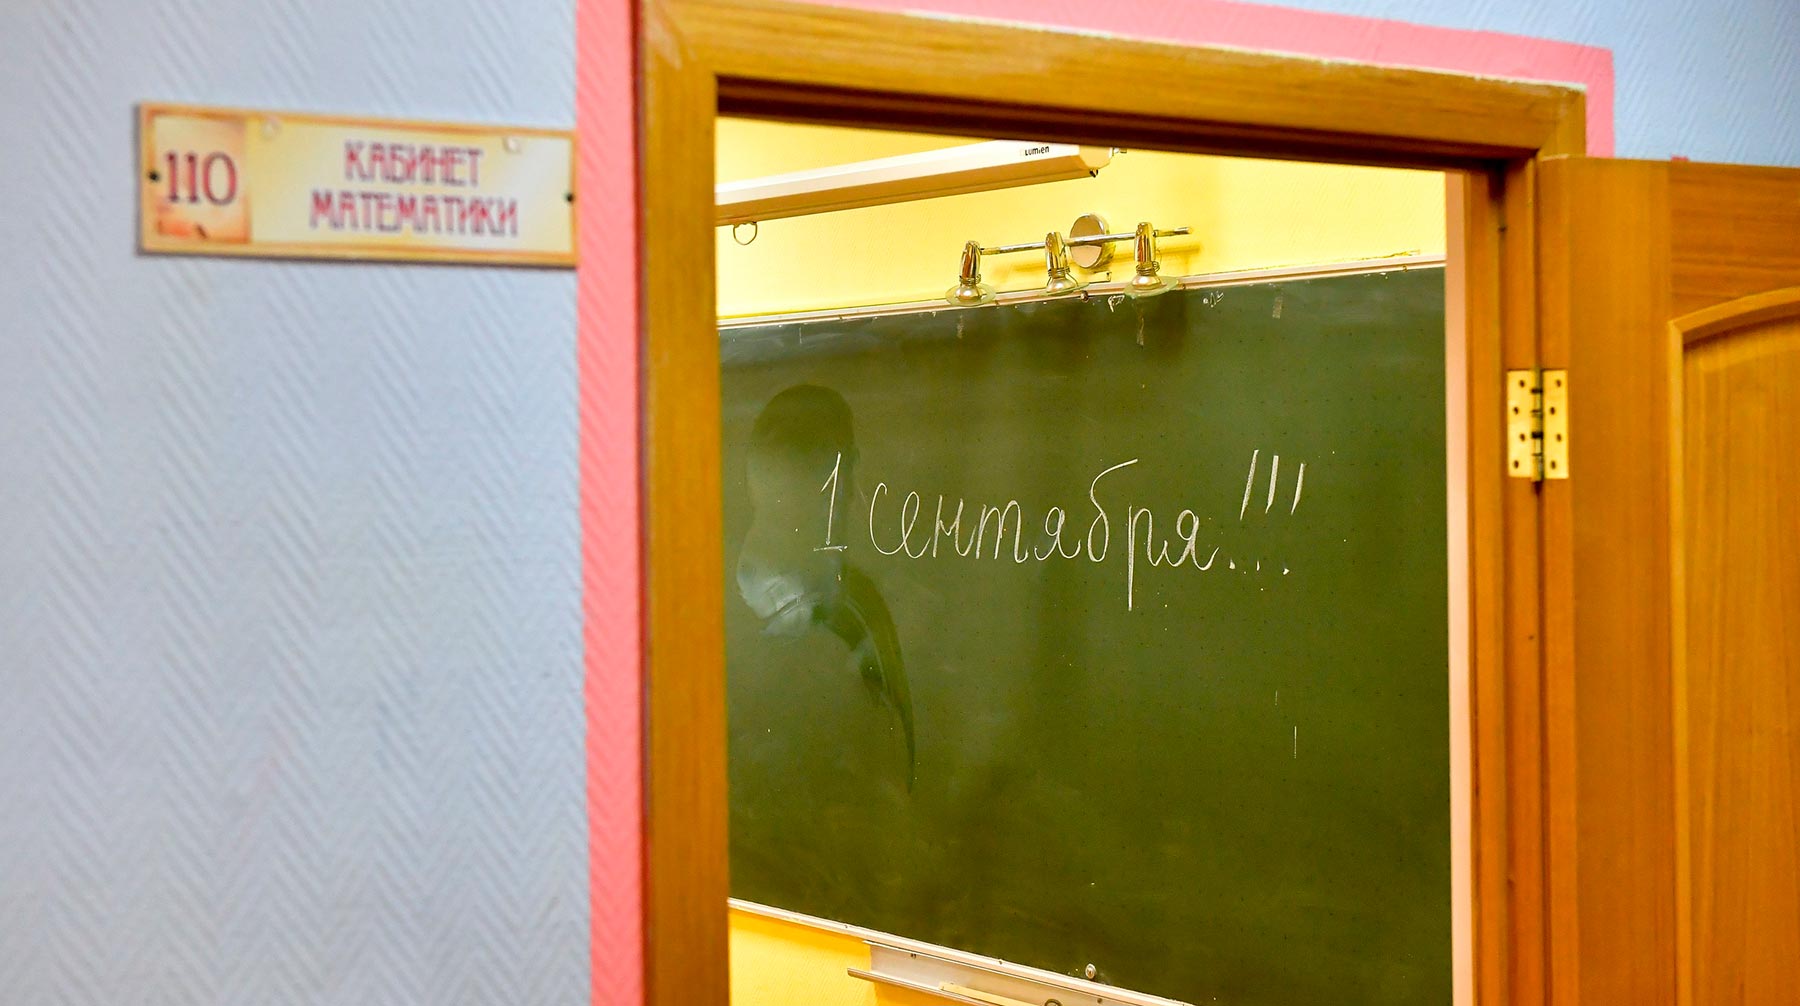 Учебные заведения будут работать в частично закрытом режиме, подчеркнули в Роспотребнадзоре Фото: © АГН Москва / Сергей Киселев